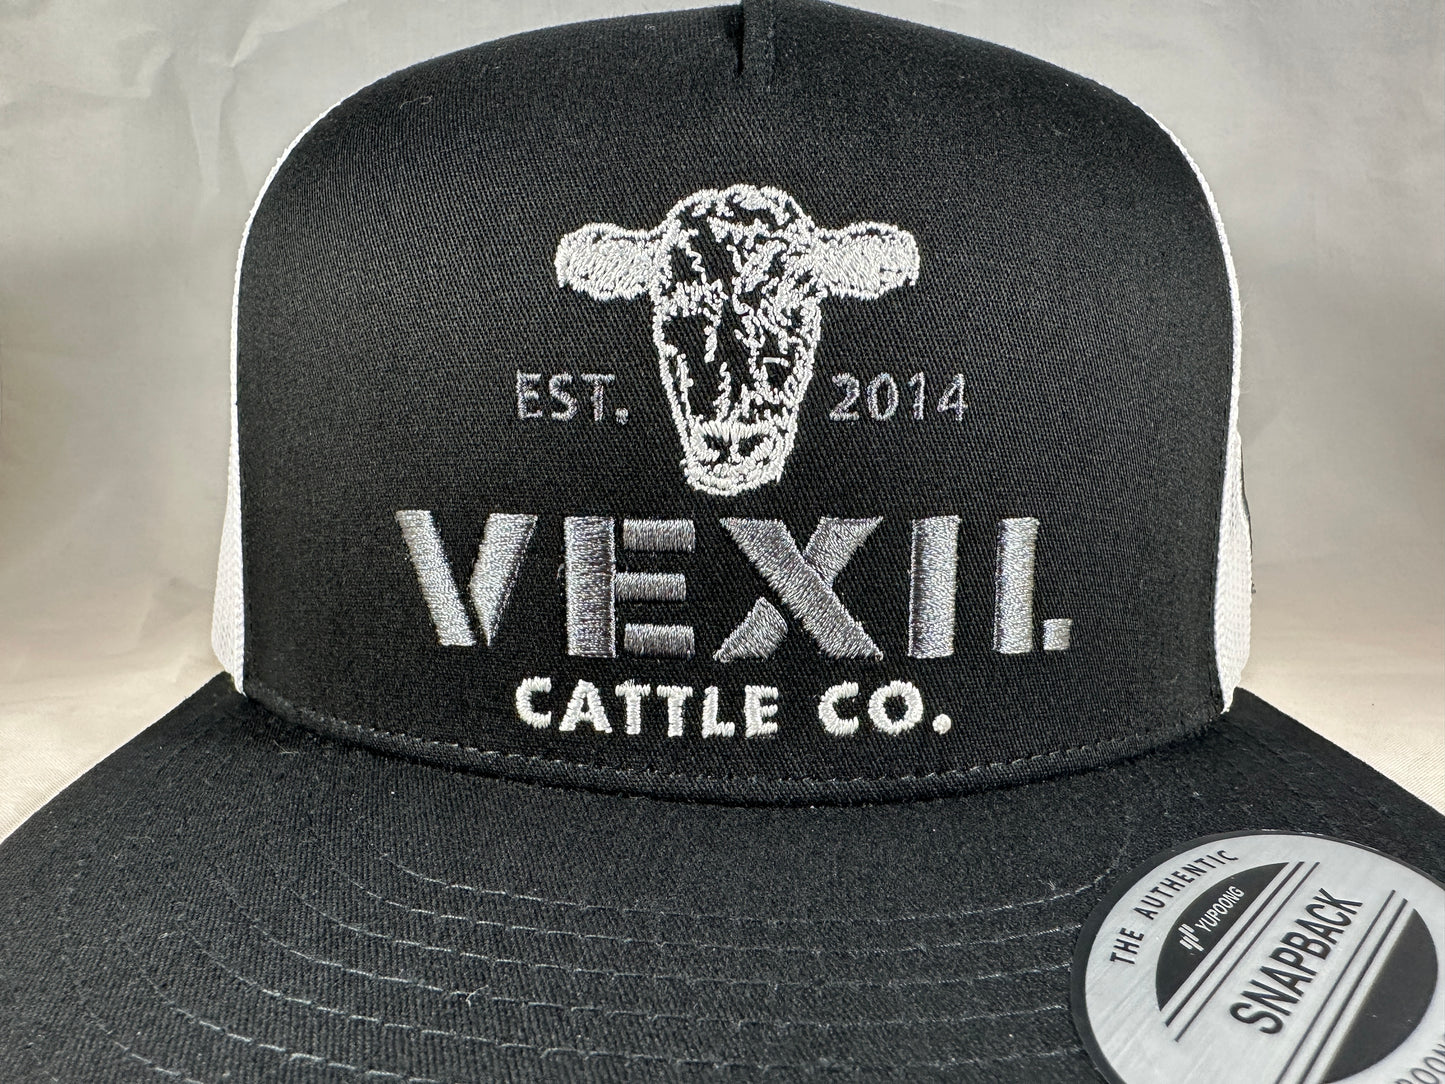 Vexil Cattle Co. - Est. 2014 - Black/White Mesh